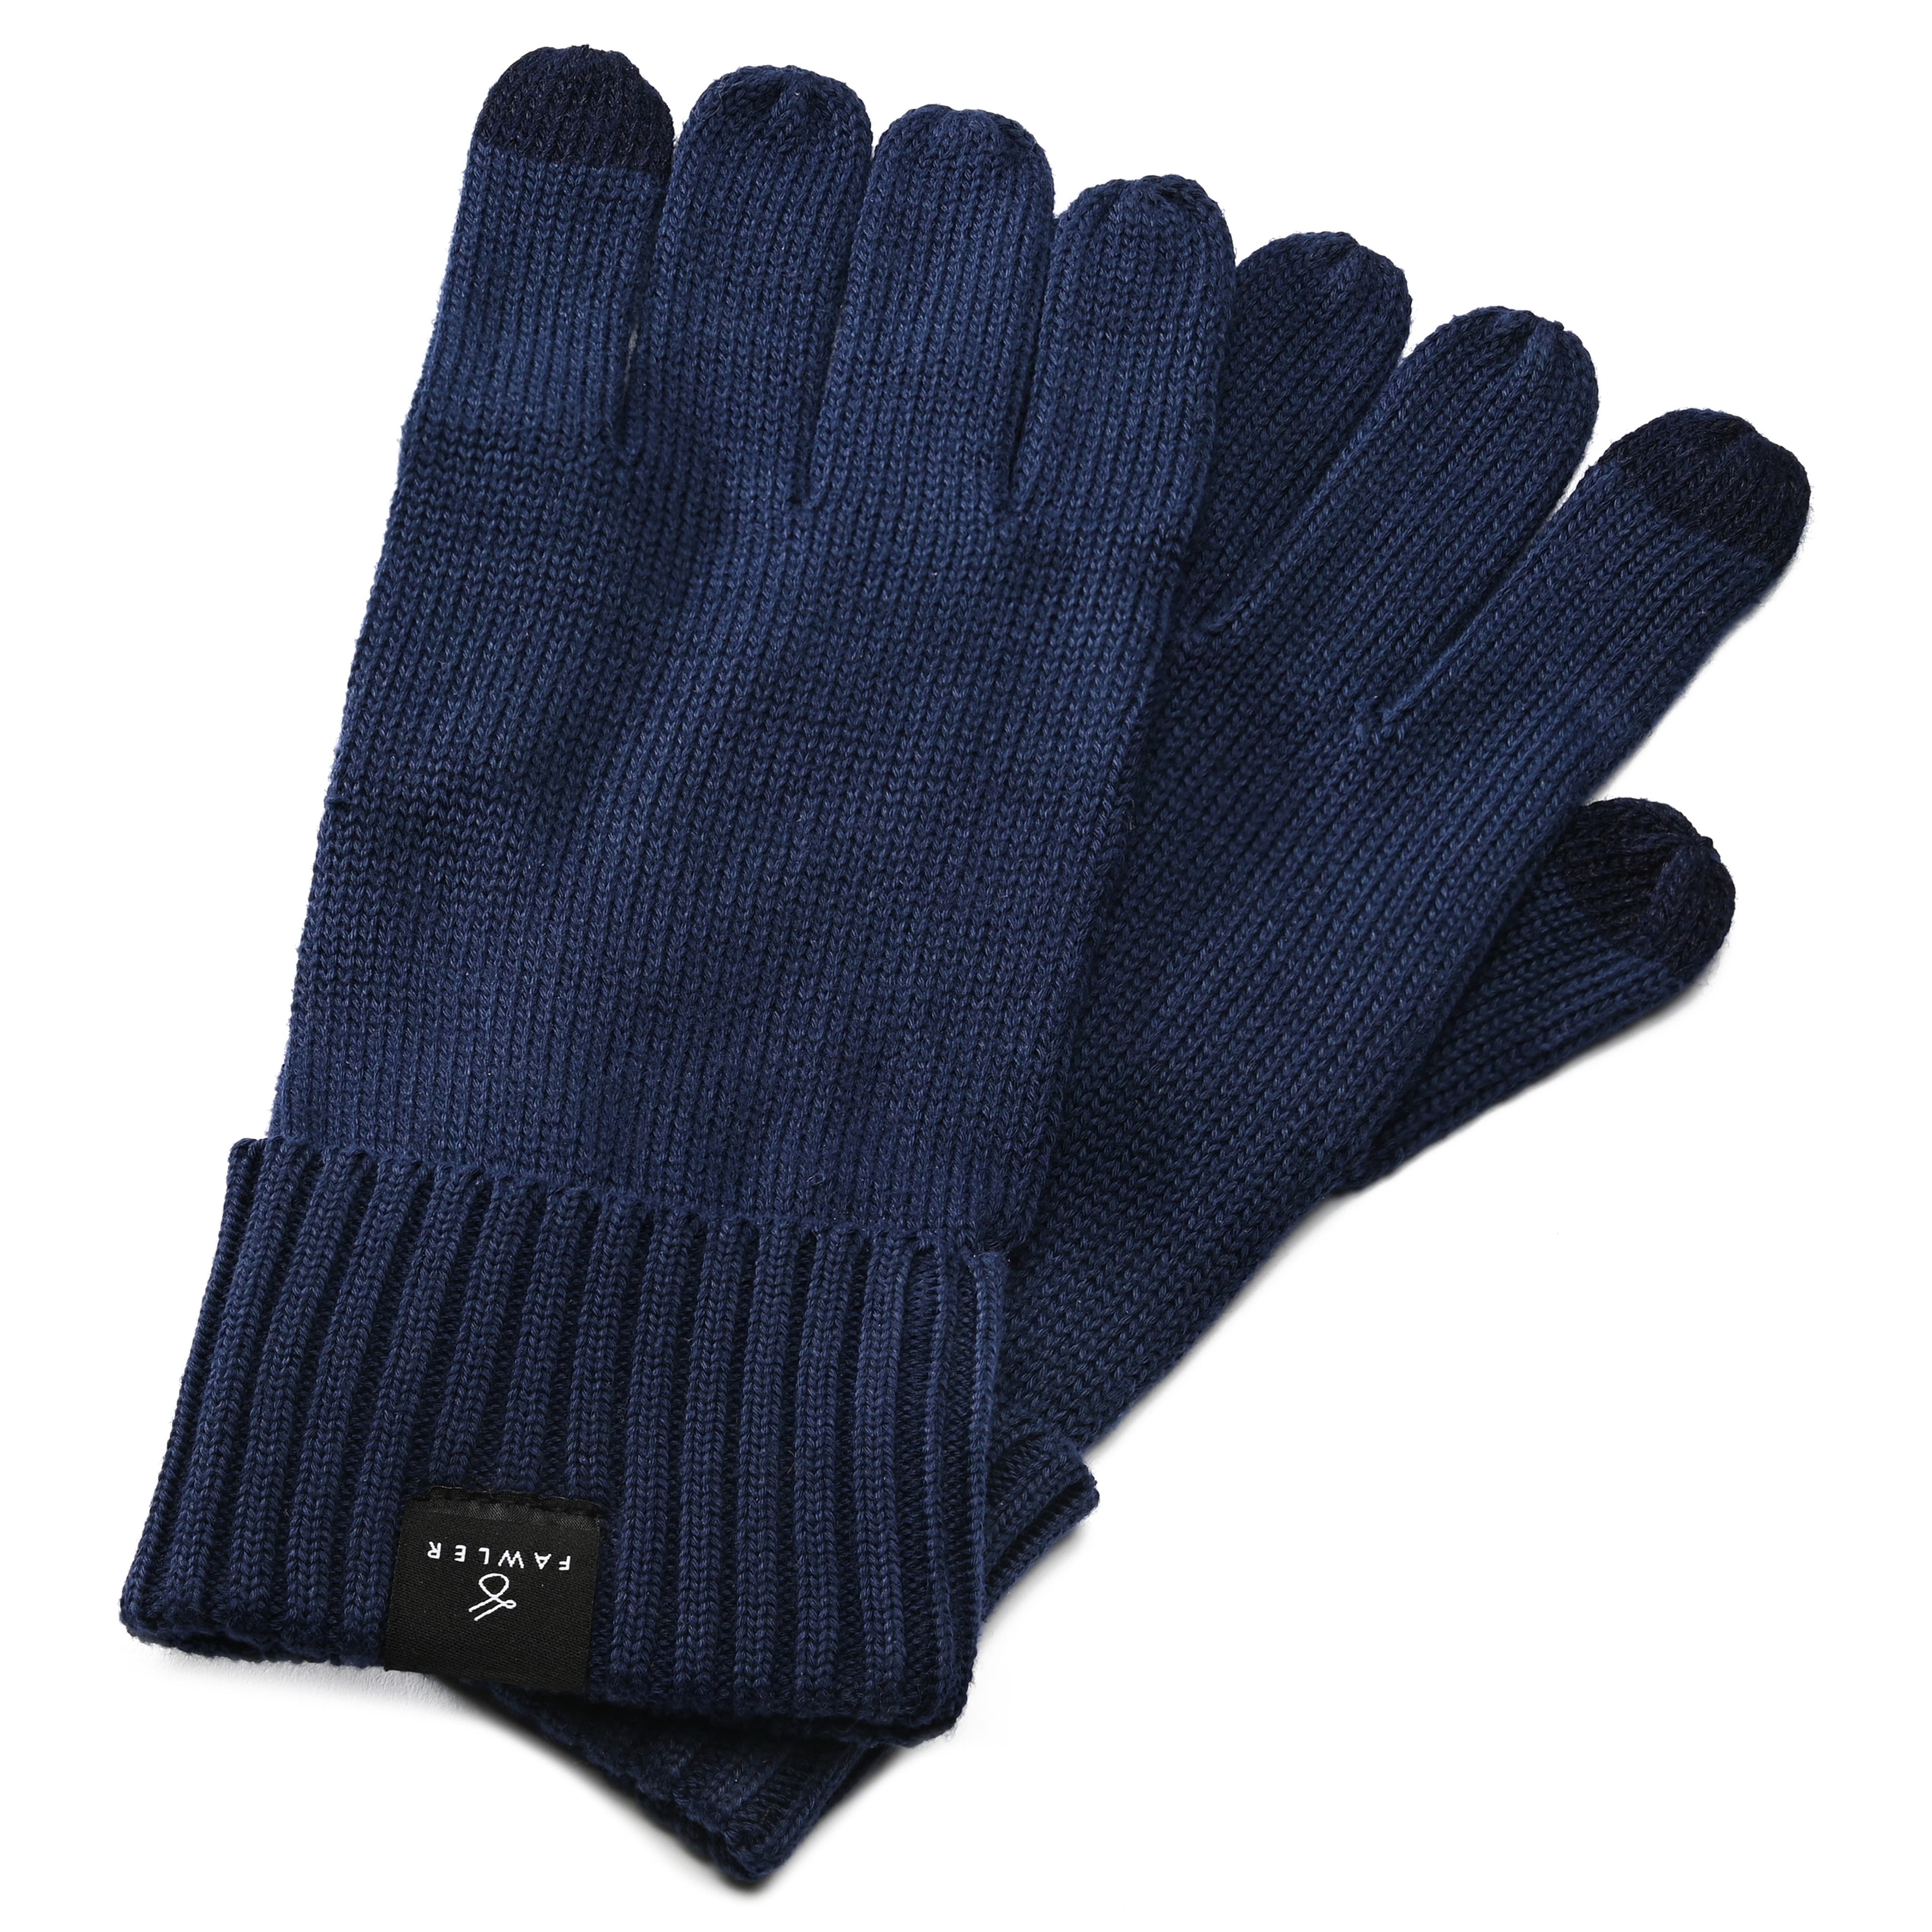 Freek námořnicky modré pletené bavlněné rukavice 